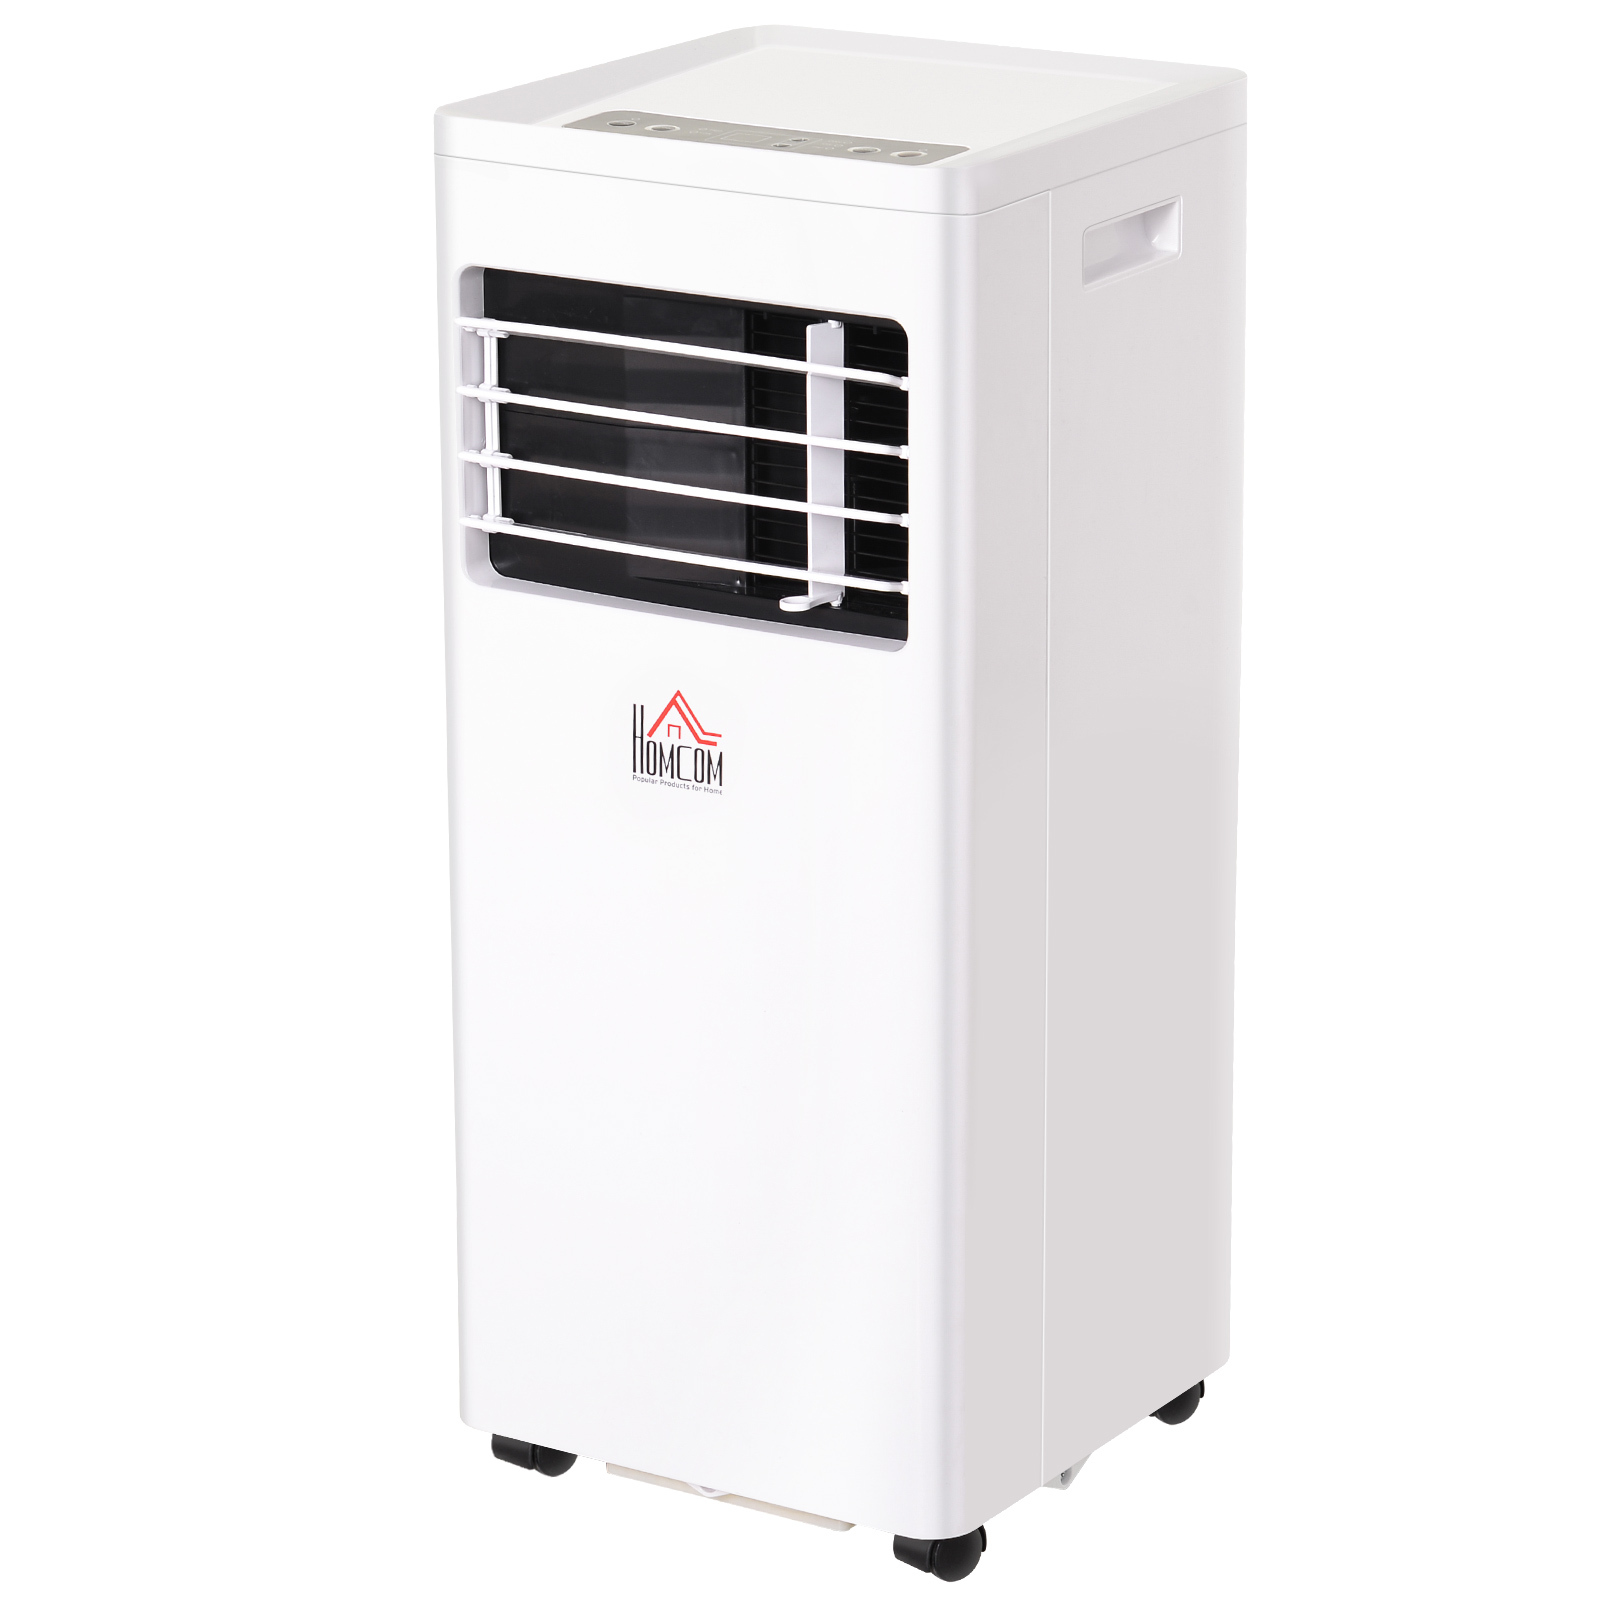 HOMCOM Mobile Klimaanlage weiß 30,5 x 32,8 x 67,8 cm (LxBxH) Klimagerät Luftentfeuchter Ventilator Kühlung